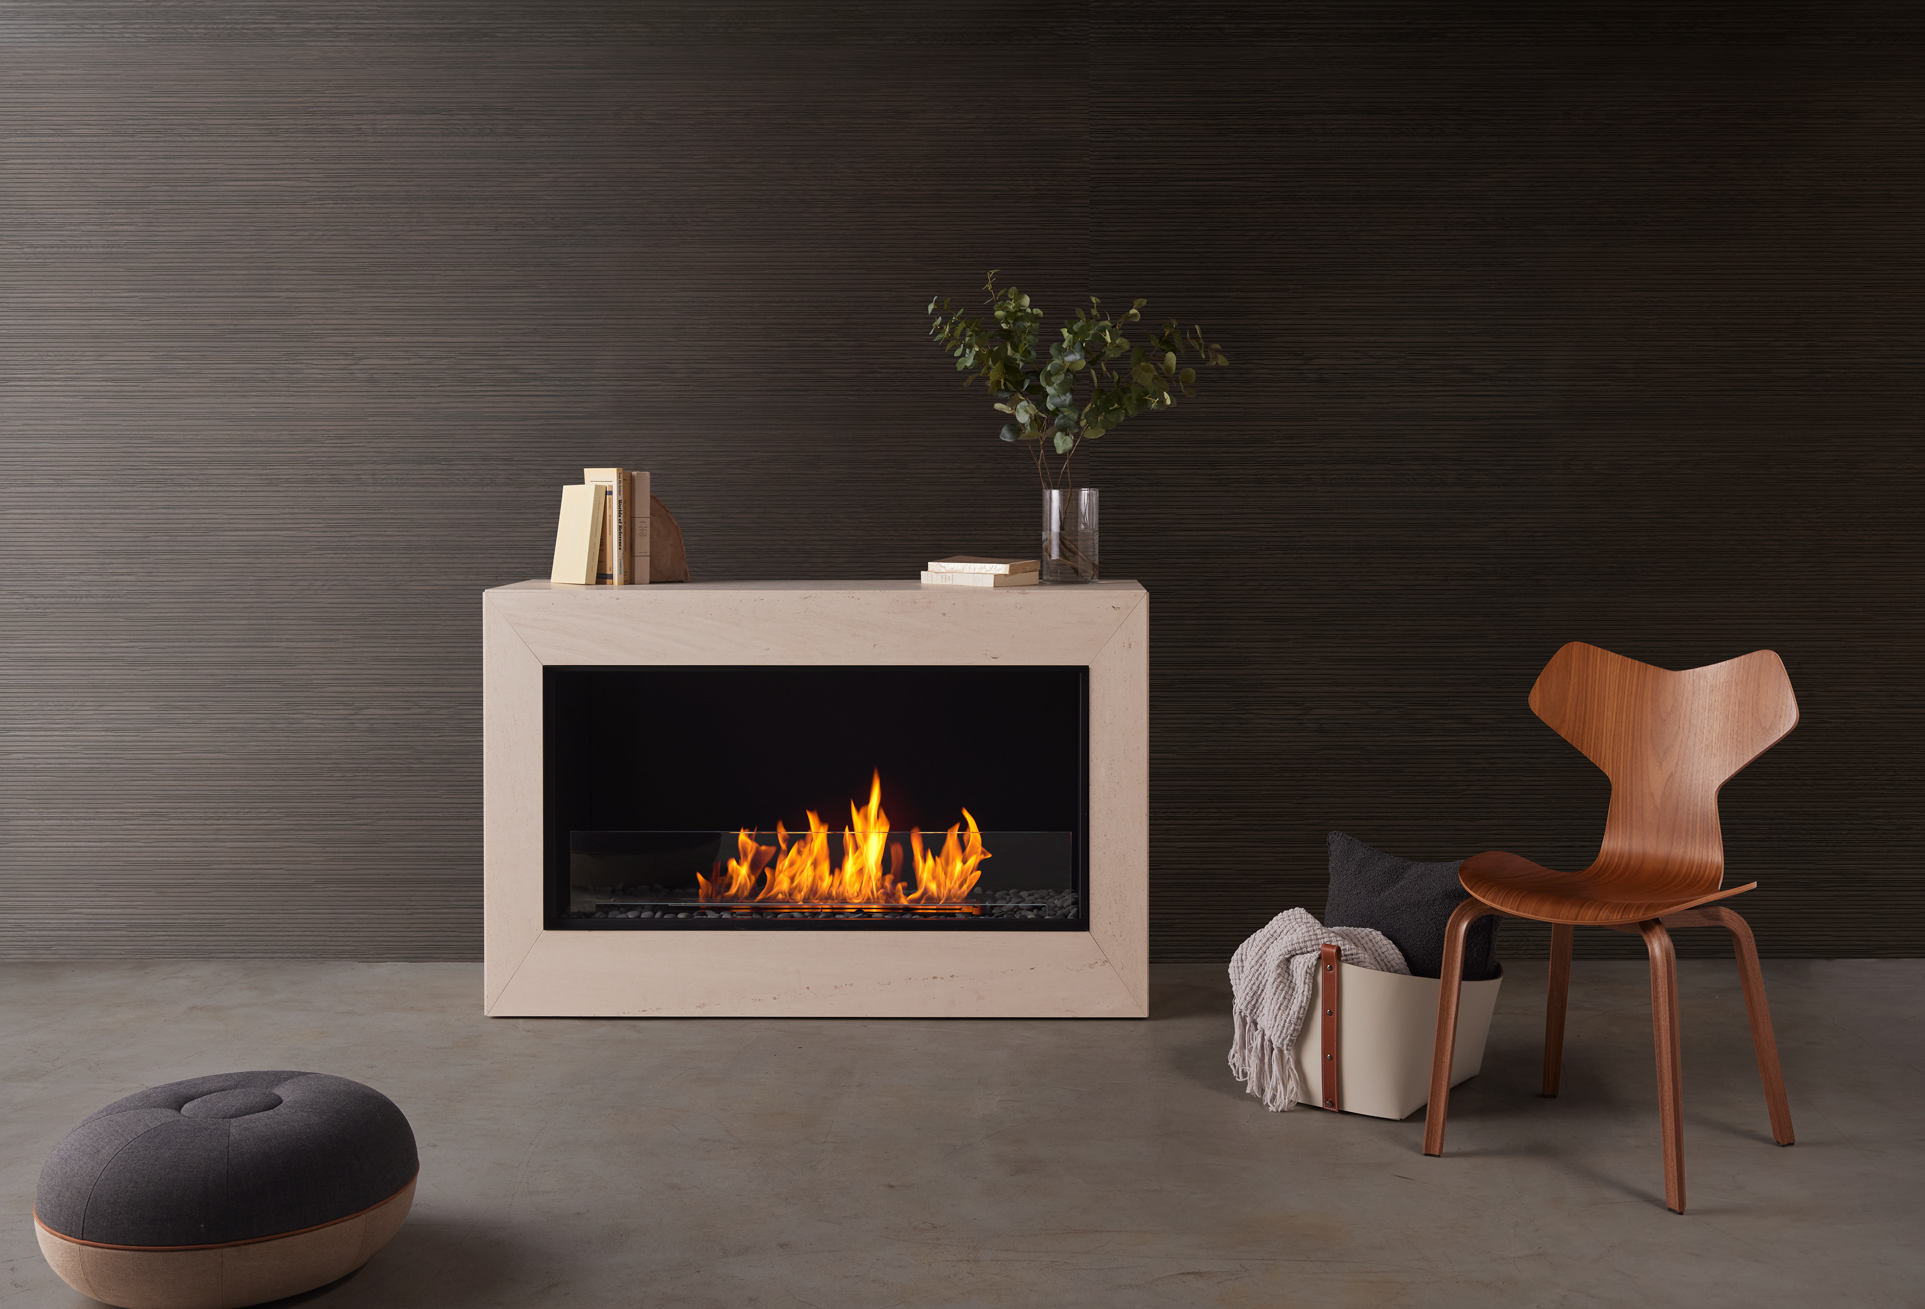 バイオエタノール暖炉「EcoSmart Fire」製品のMODUSの画像。暖炉と違って工事が不要なため、自由な場所に配置できています。